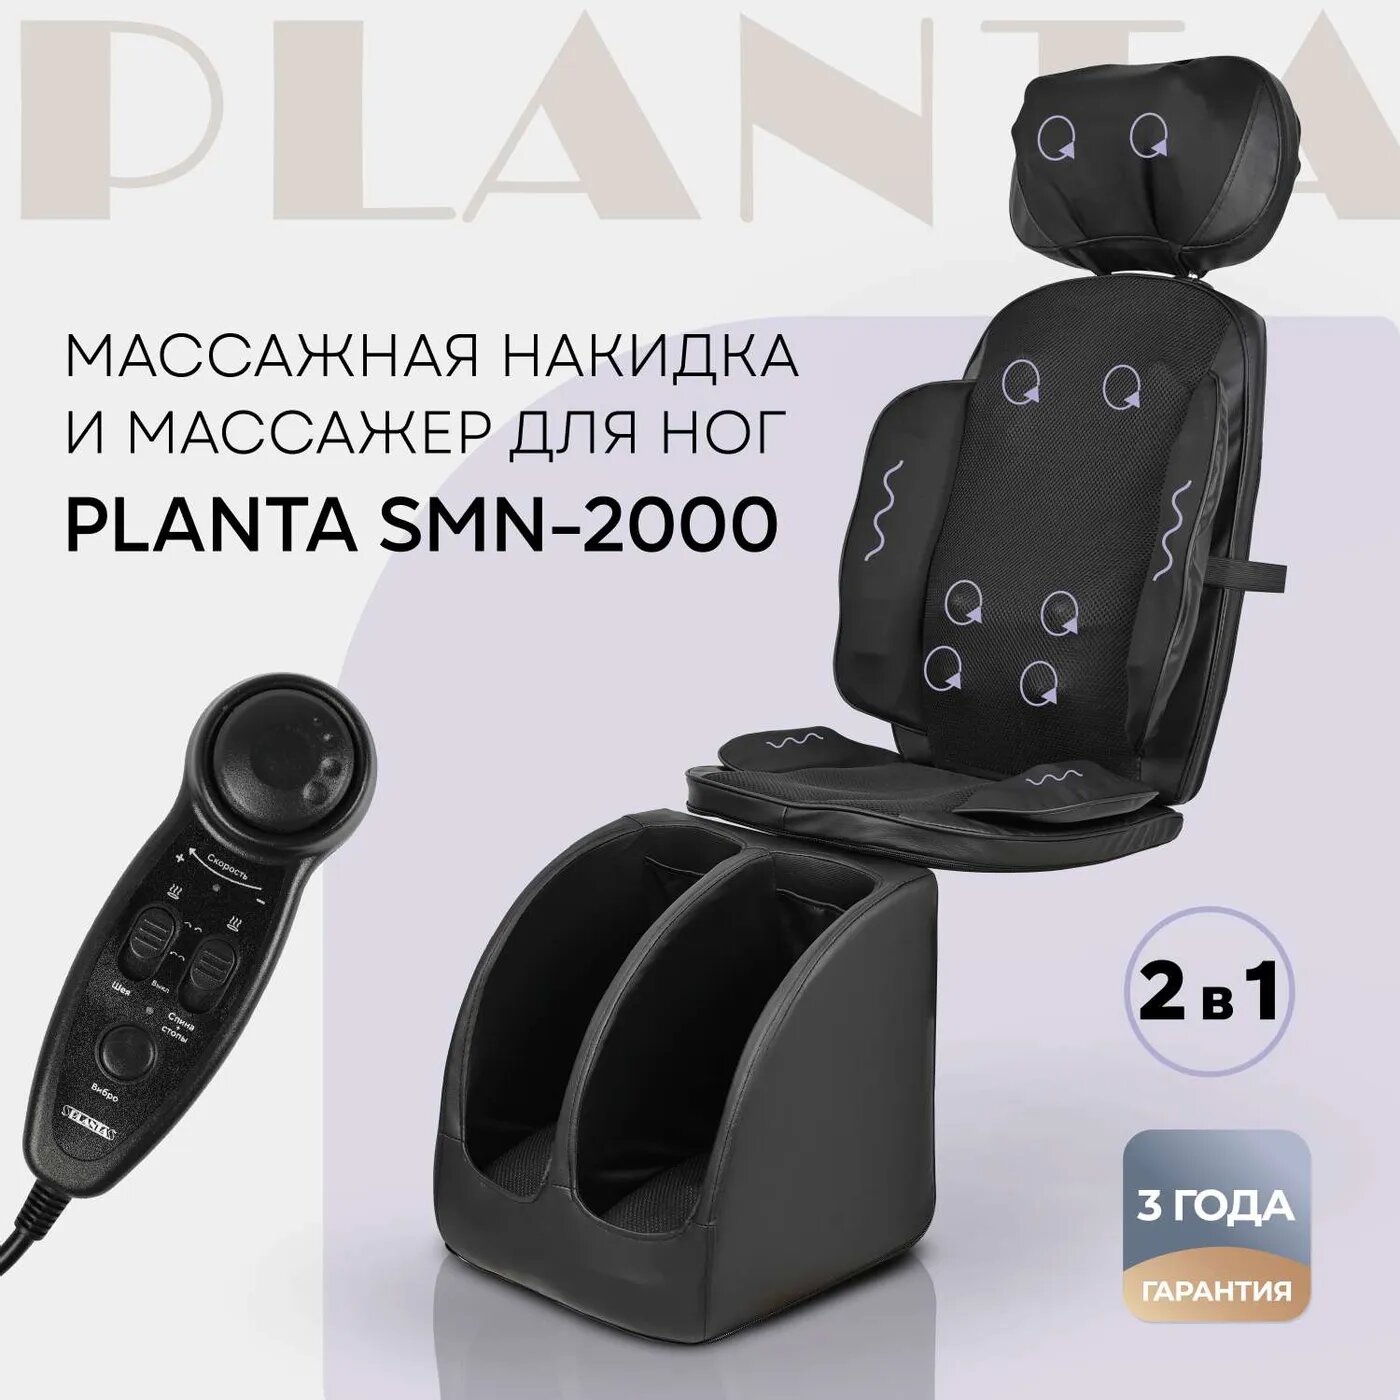 Массажное кресло Planta накидка и массажер для ног SMN-2000 2 в 1